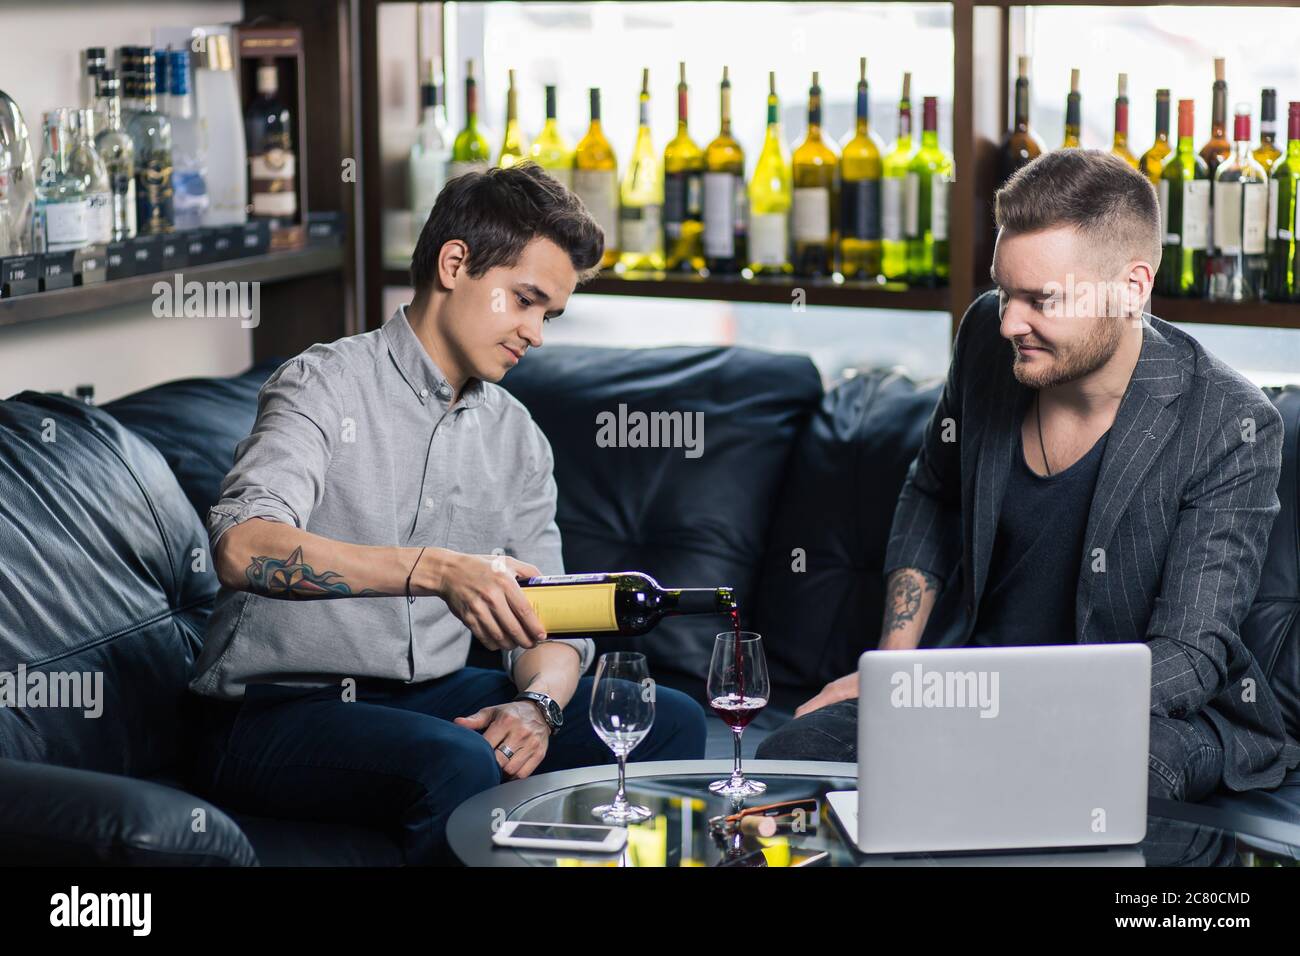 Zwei junge Männer gießen Wein und lächeln Stockfoto